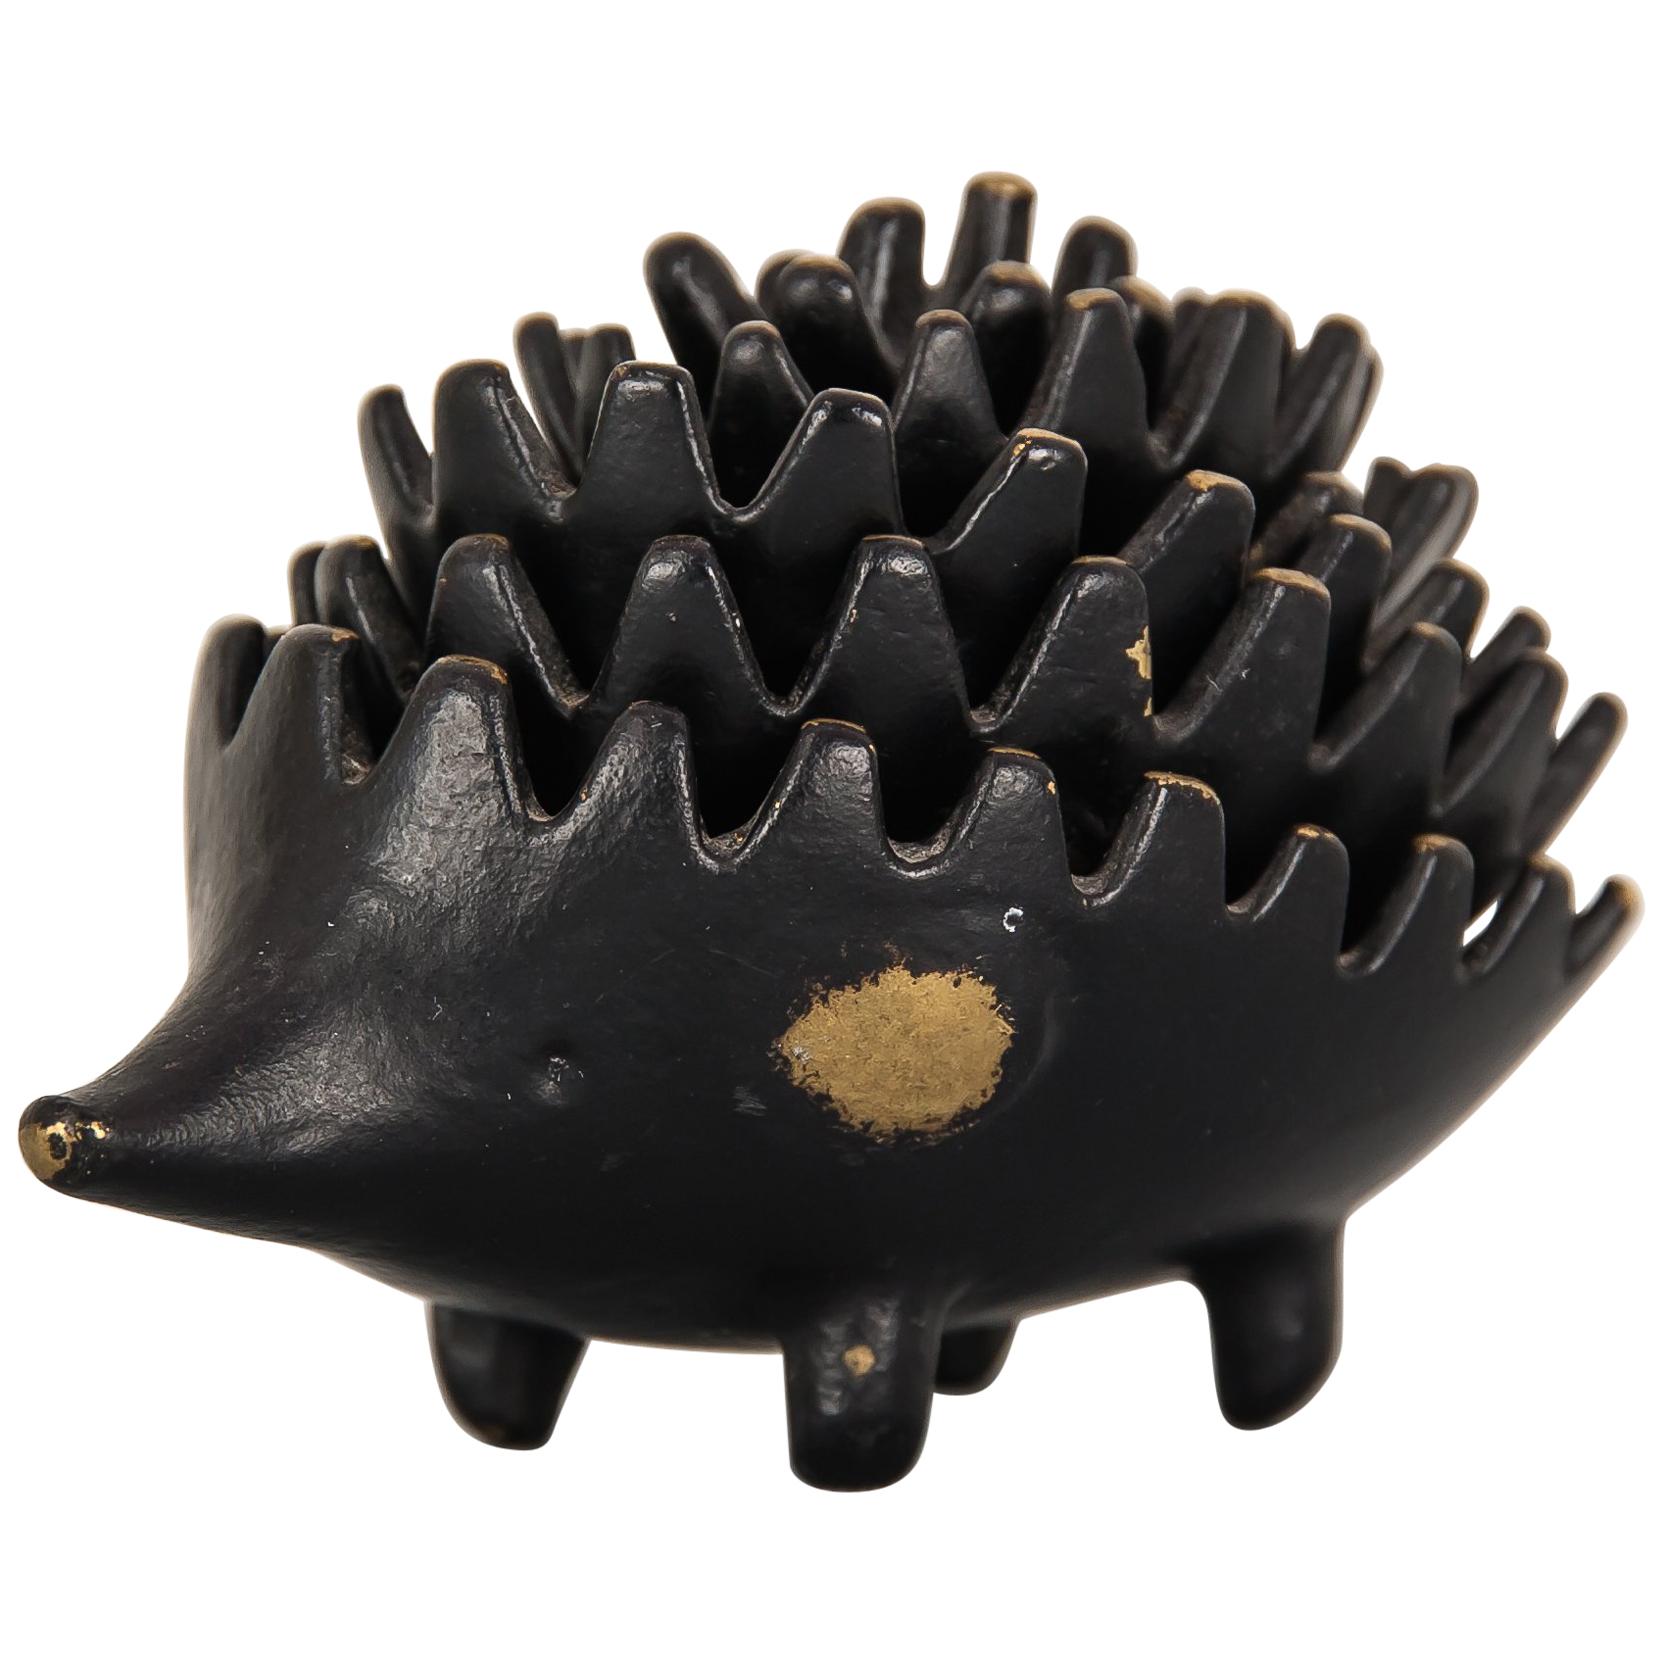 Hedgehog by Walter Bosse for Hertha Baller